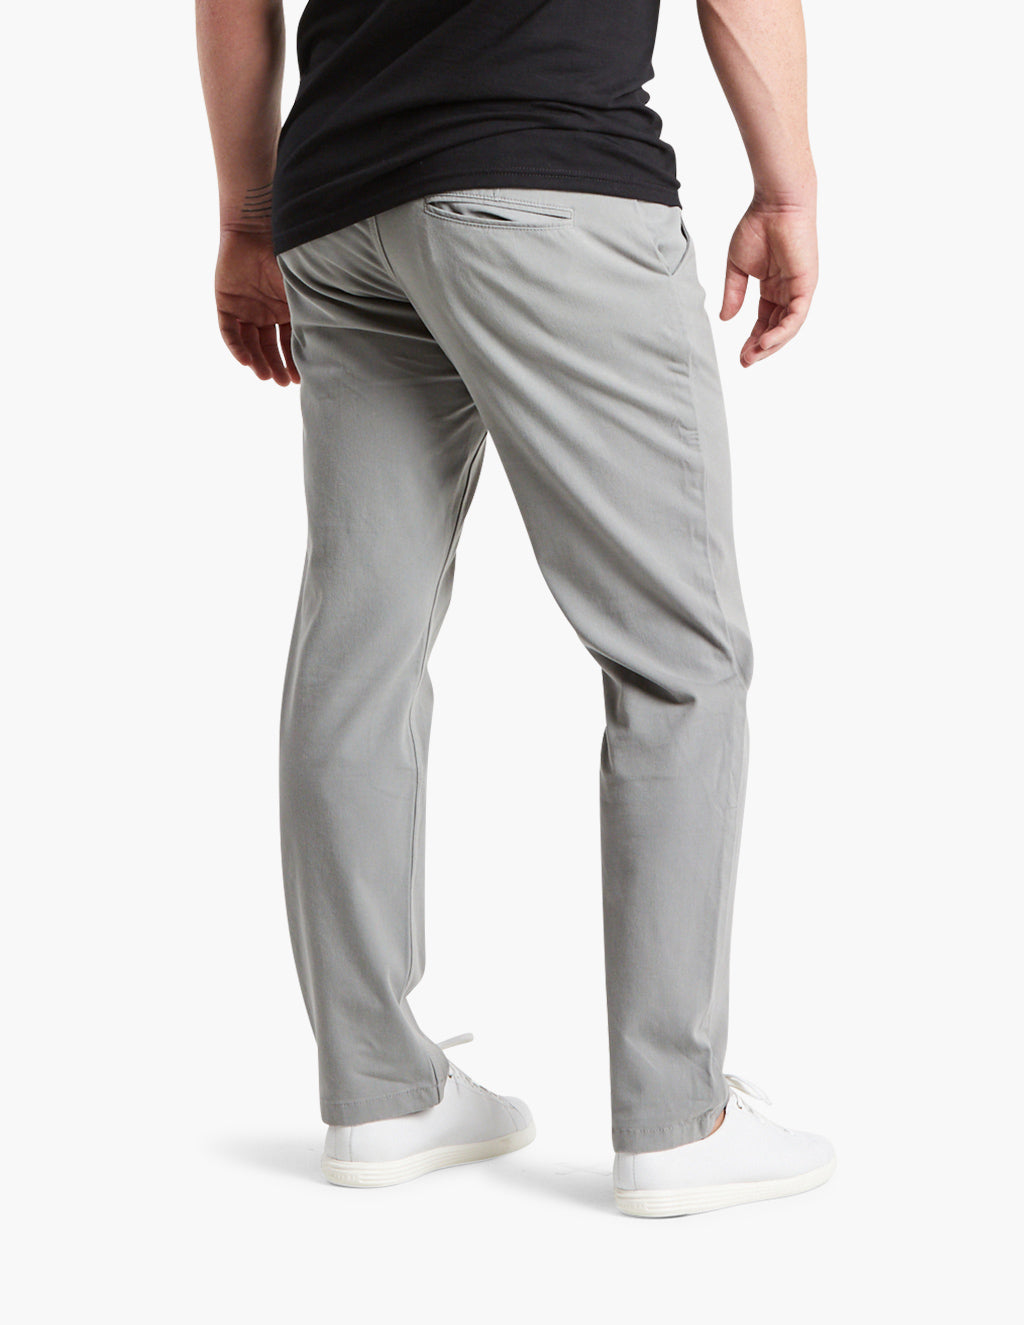 Damens Gray Men's Chino Pants - Comfortable Chinos by Mugsy